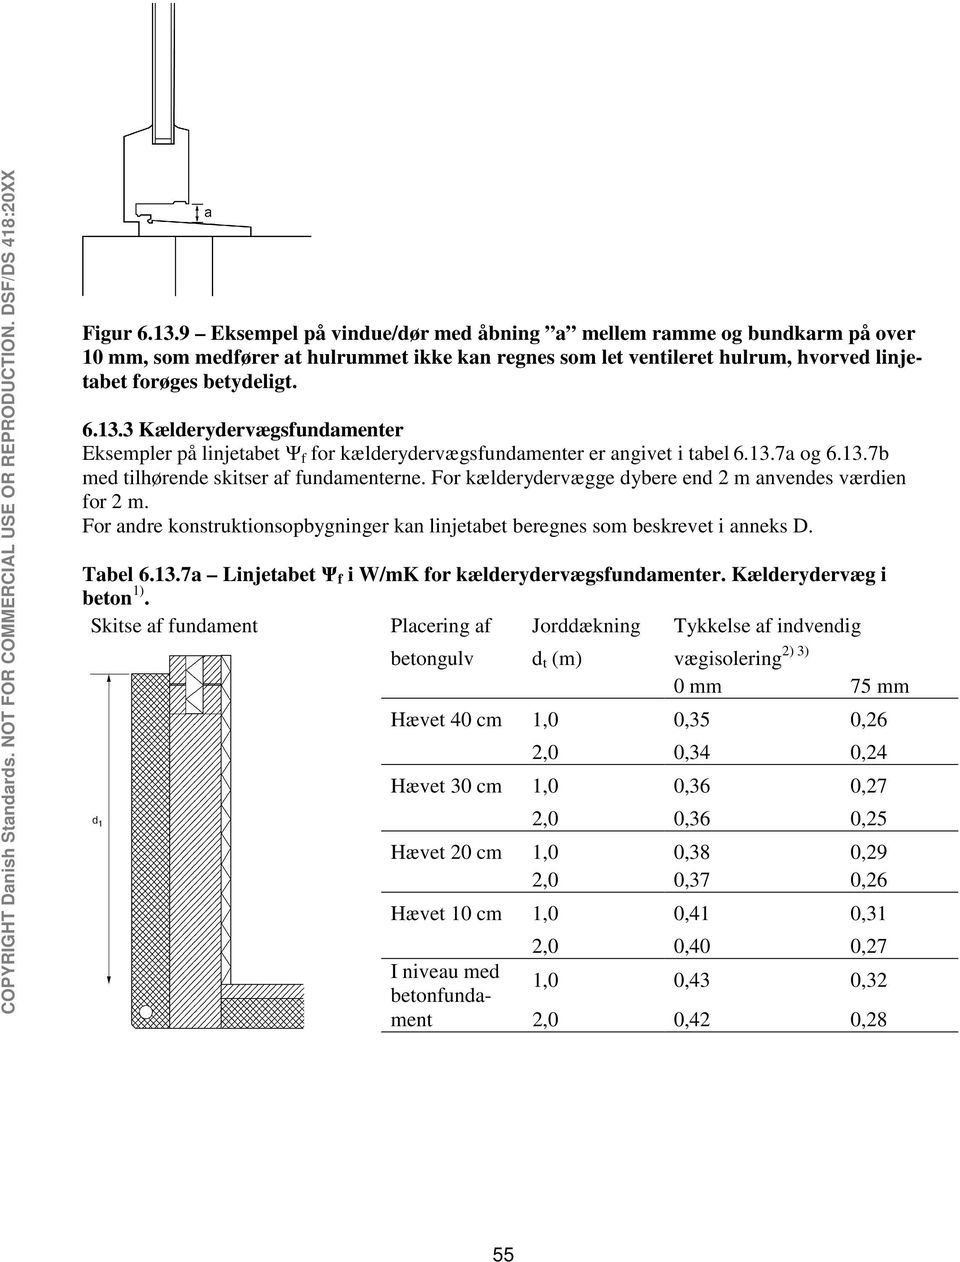 For andre konstruktionsopbygninger kan linjetabet beregnes som beskrevet i anneks D. Tabel 6.13.7a Linjetabet Ψ f i W/mK for kælderydervægsfundamenter. Kælderydervæg i beton 1).